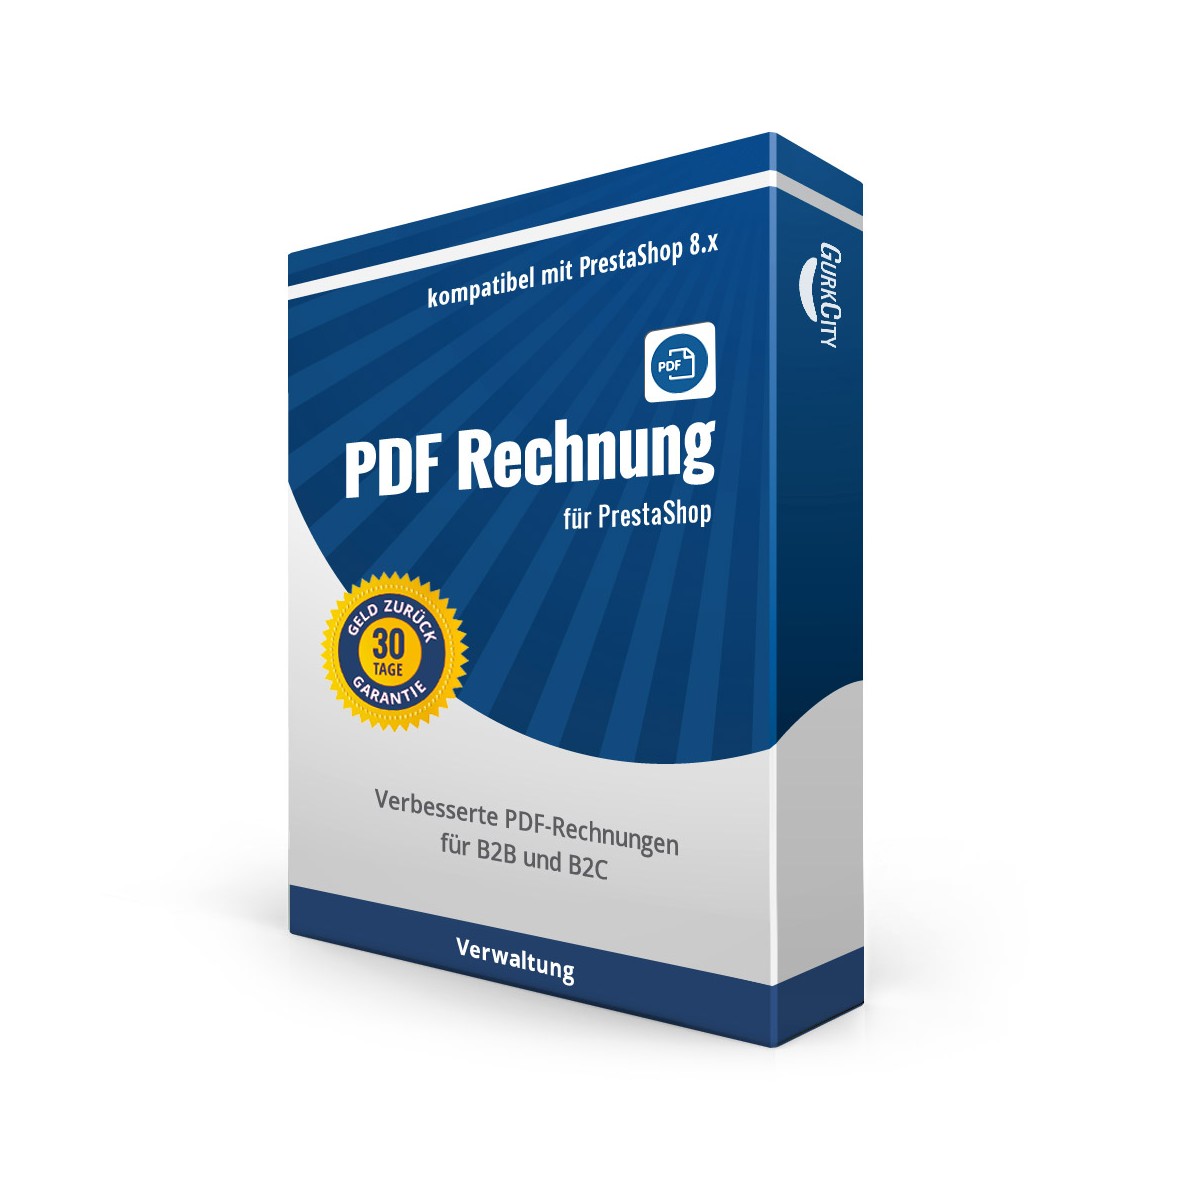 PDF Rechnung PrestaShop 8.x